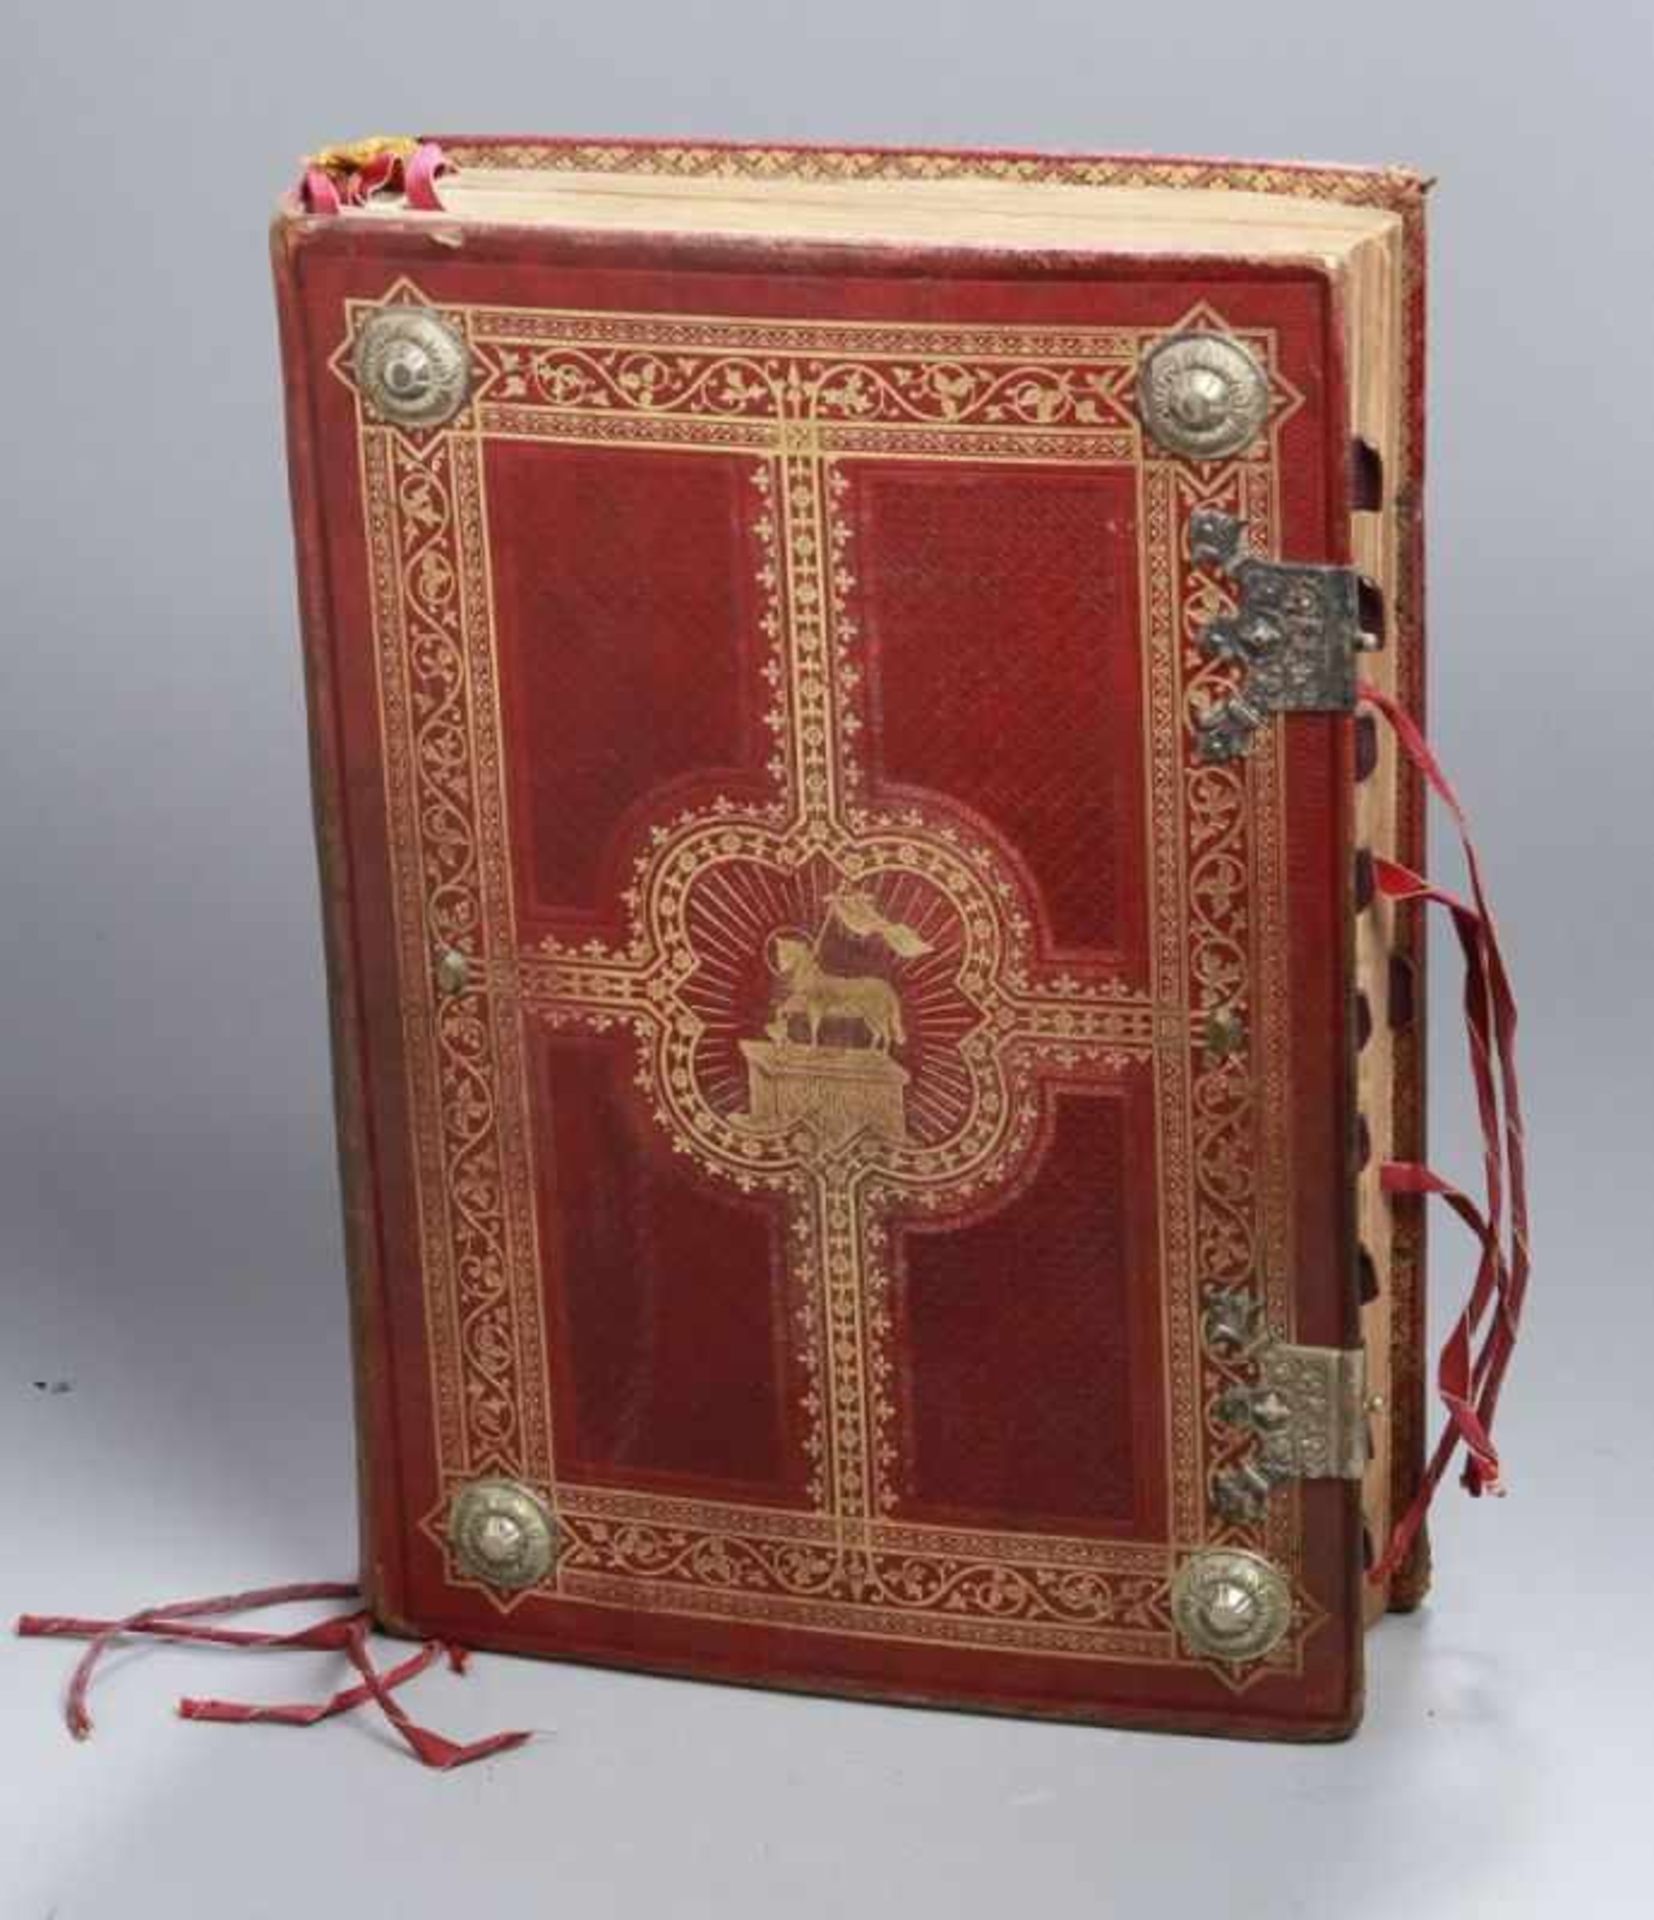 Buch, "Missale Romanum", Verlag Friedrich Pustet, 1896, geprägter Einband, guterErhaltungszustand